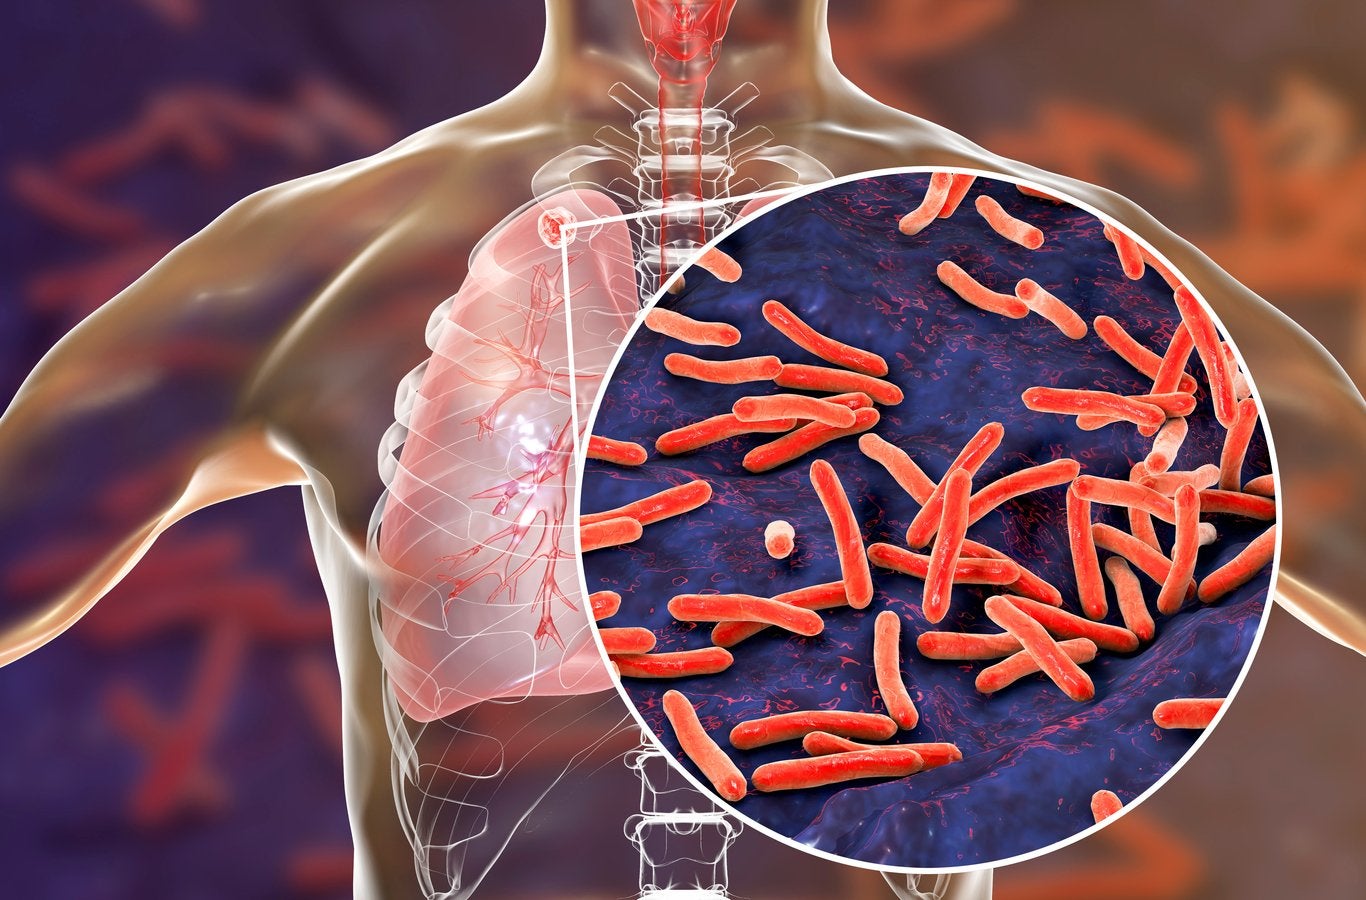 La tuberculosis se transmite de una persona a otra a través de gotitas de aerosol suspendidas en el aire expulsadas por personas con enfermedad pulmonar activa.